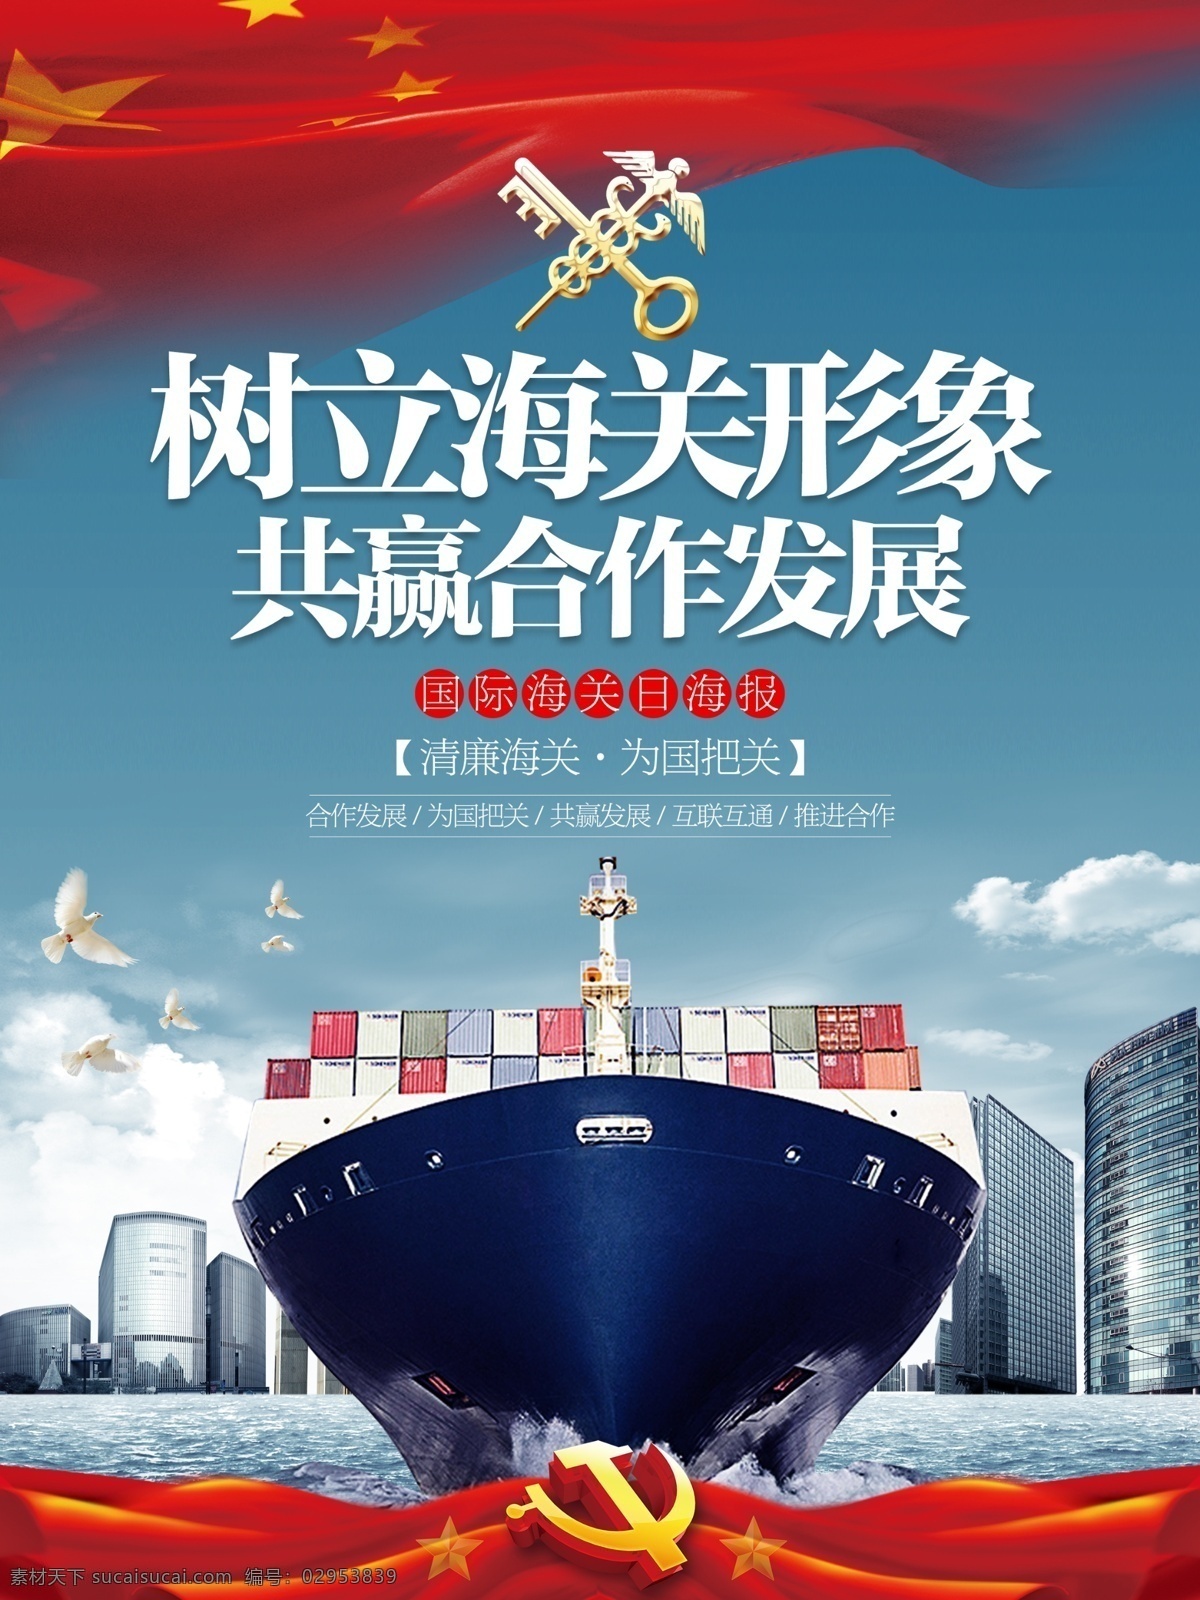 简约 国际 海关 日 主题 宣传海报 展板 发展 海报 海关日 合作 货轮 形象 宣传 邮轮 中国